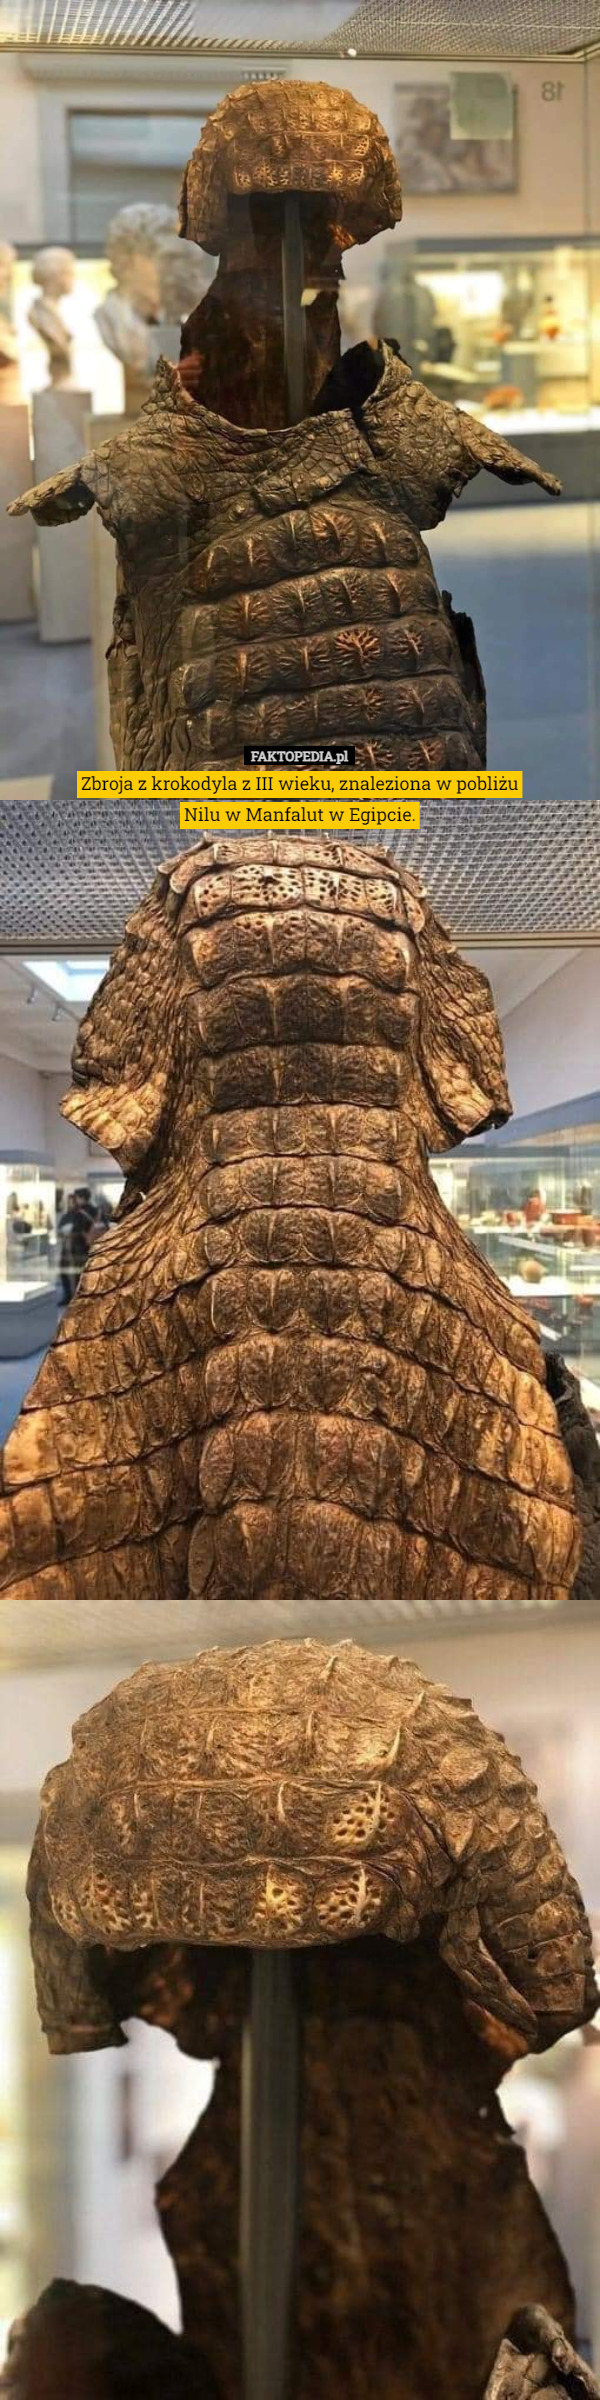 Zbroja z krokodyla z III wieku, znaleziona w pobliżu
Nilu w Manfalut w Egipcie. 